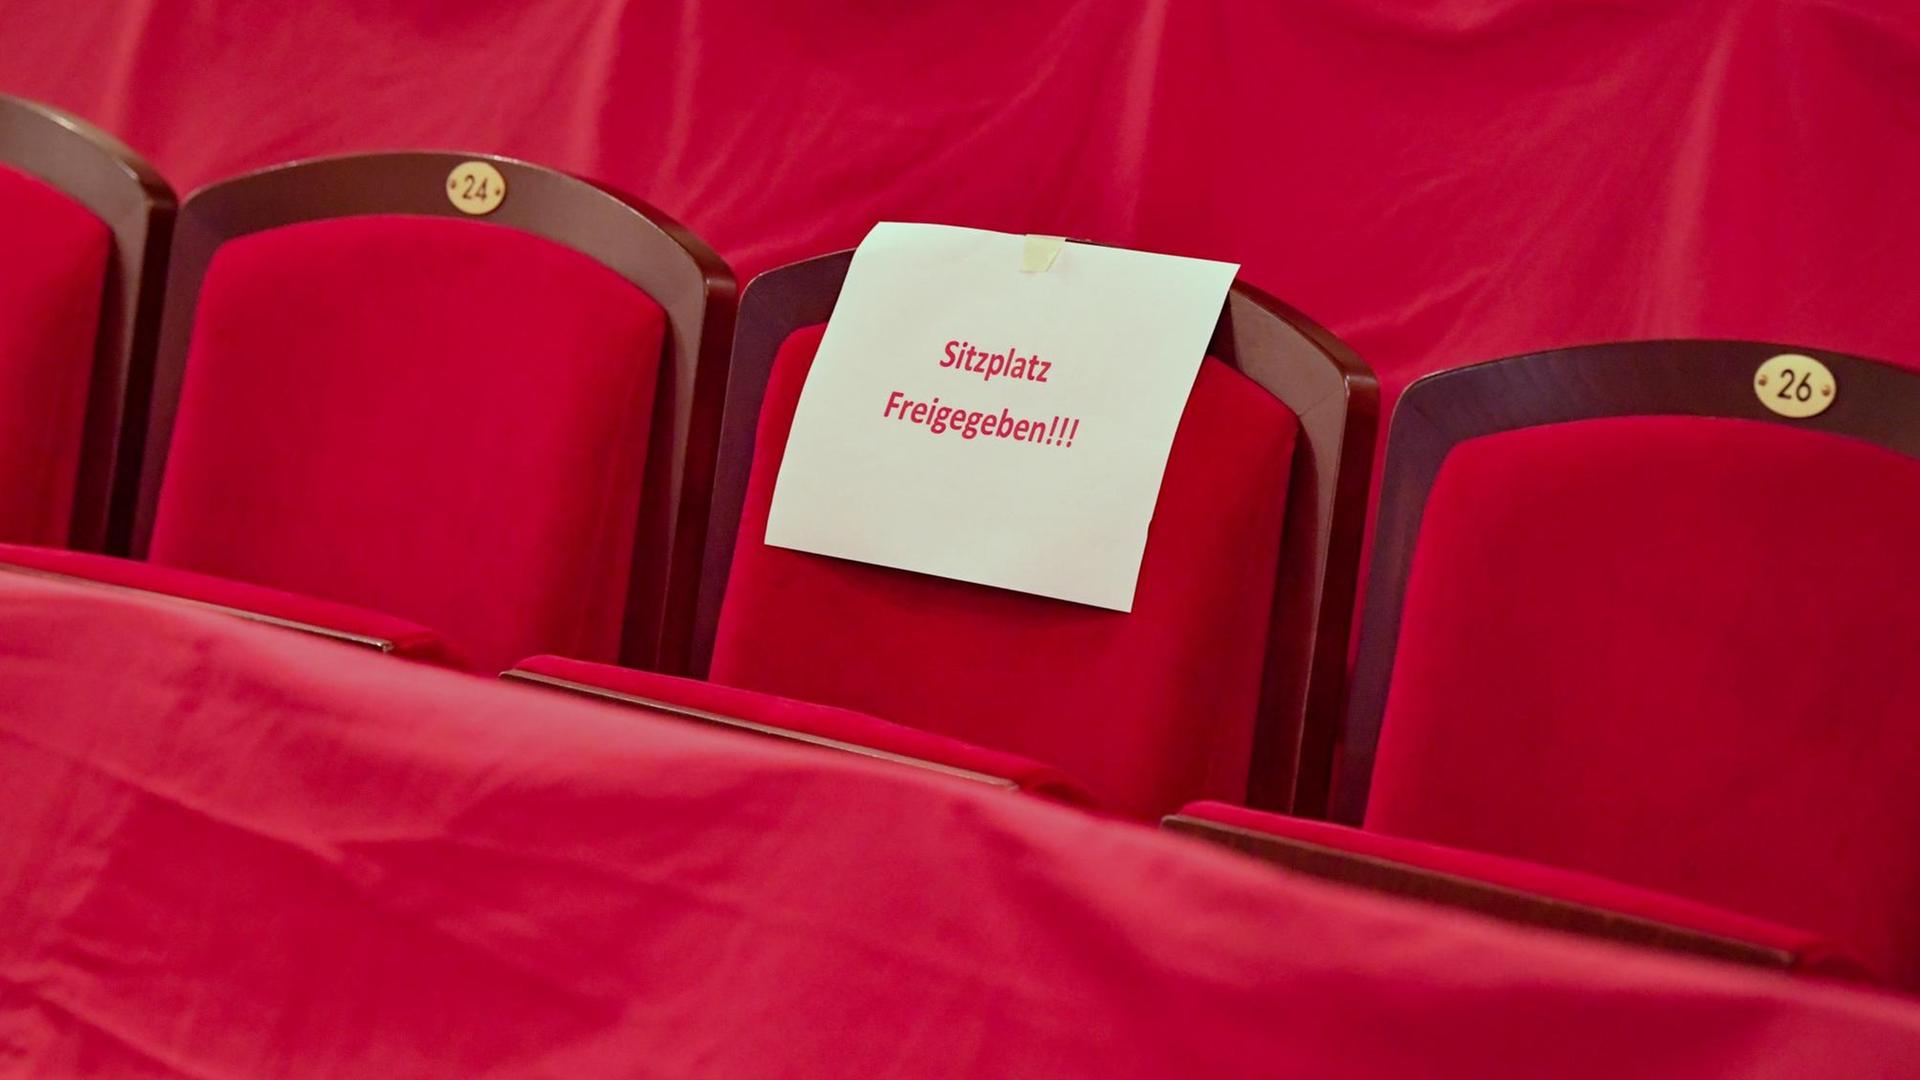 Ein Schild mit der Aufschrift "Sitzplatz freigegeben!!!" liegt auf einem roten Theatersitz.